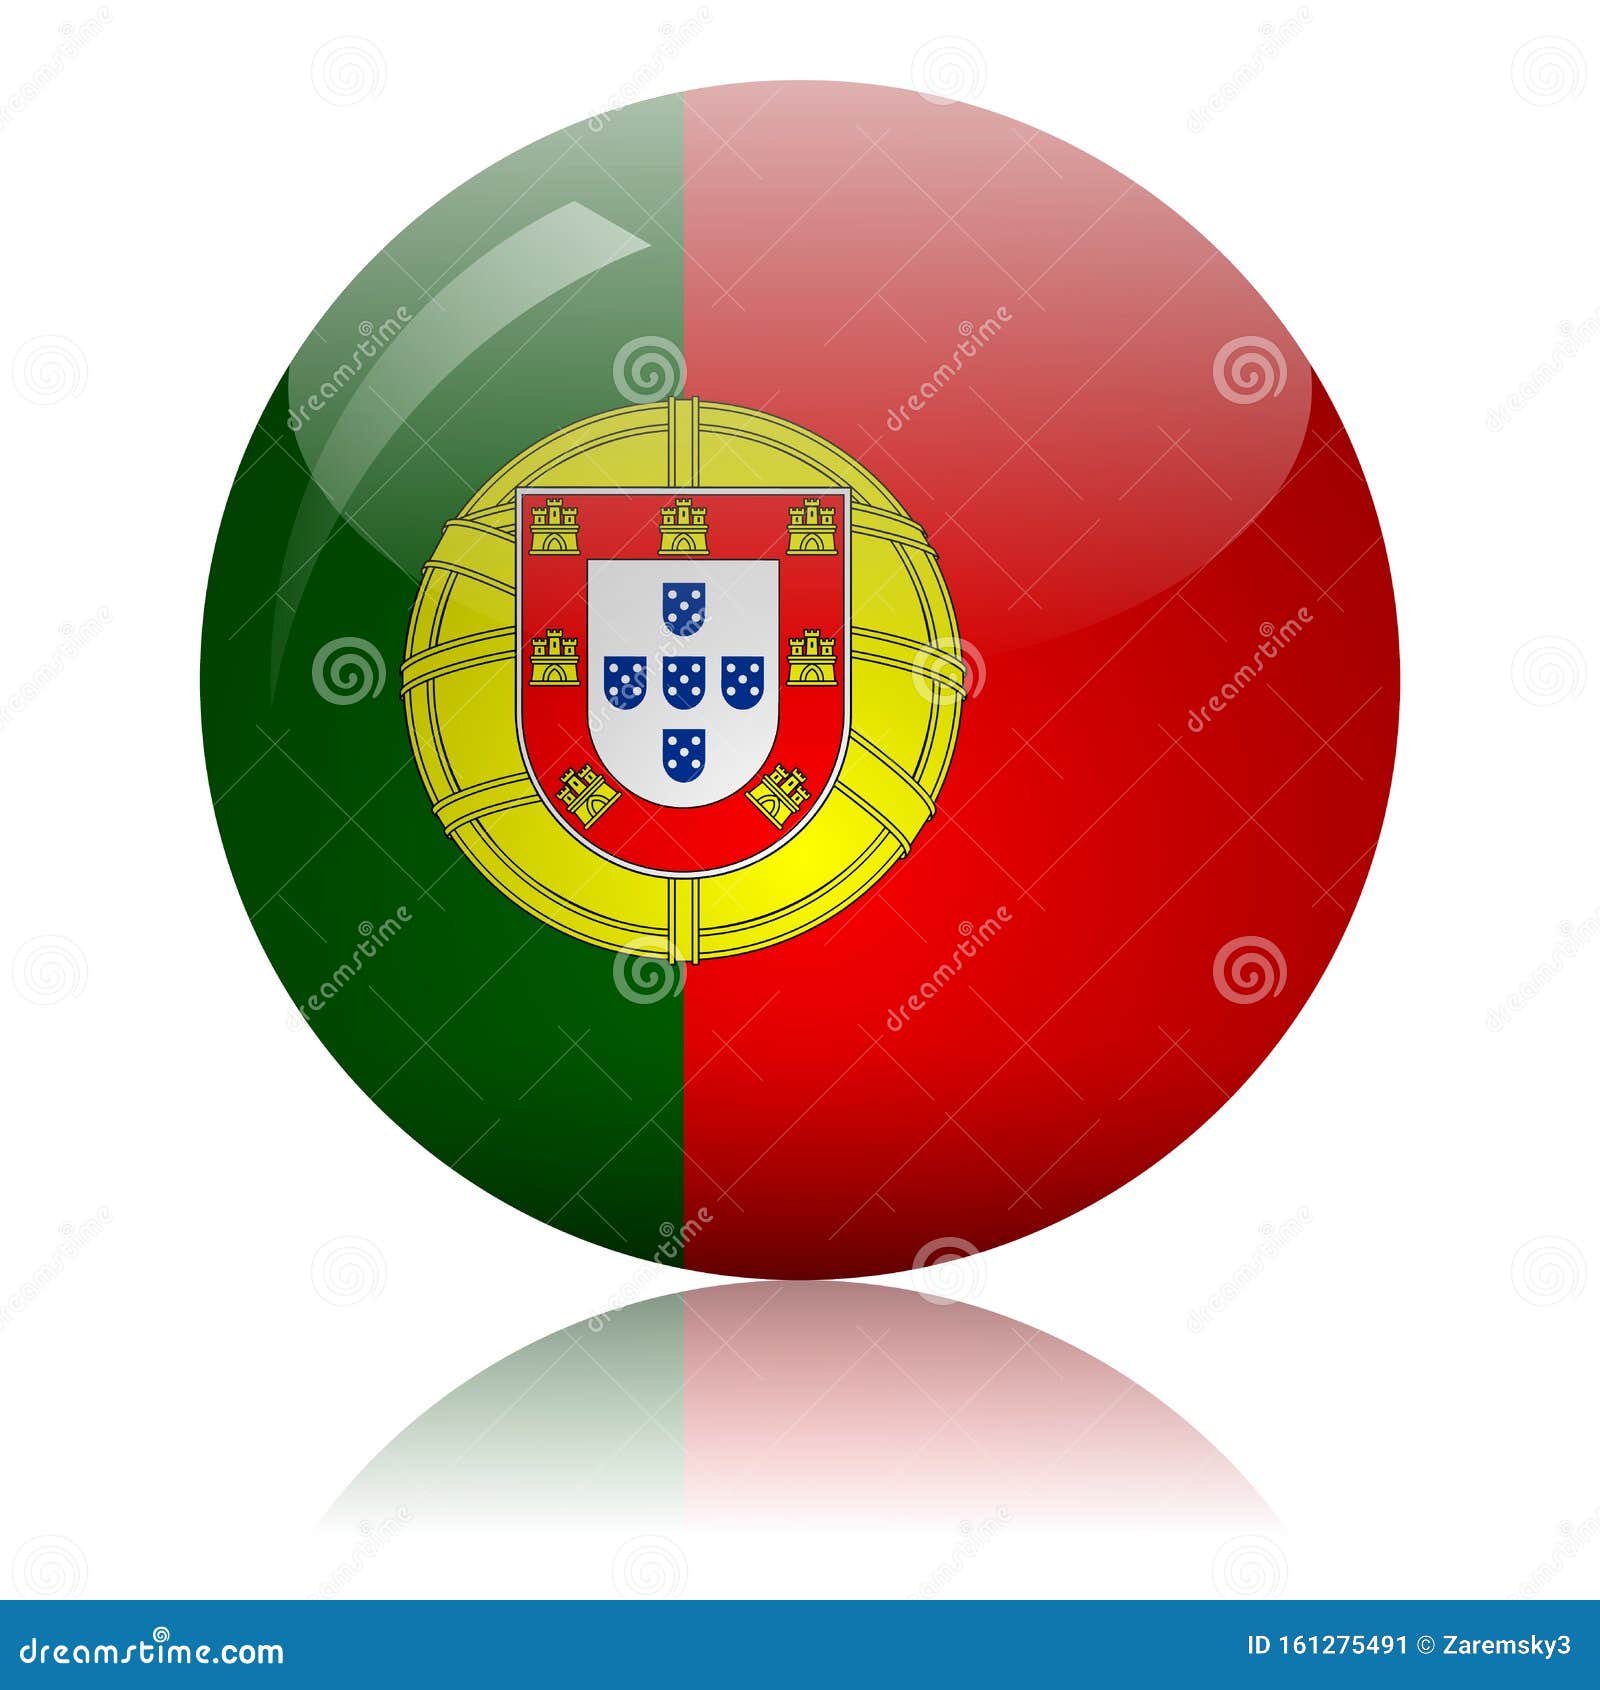 portuguese flag glass icon  